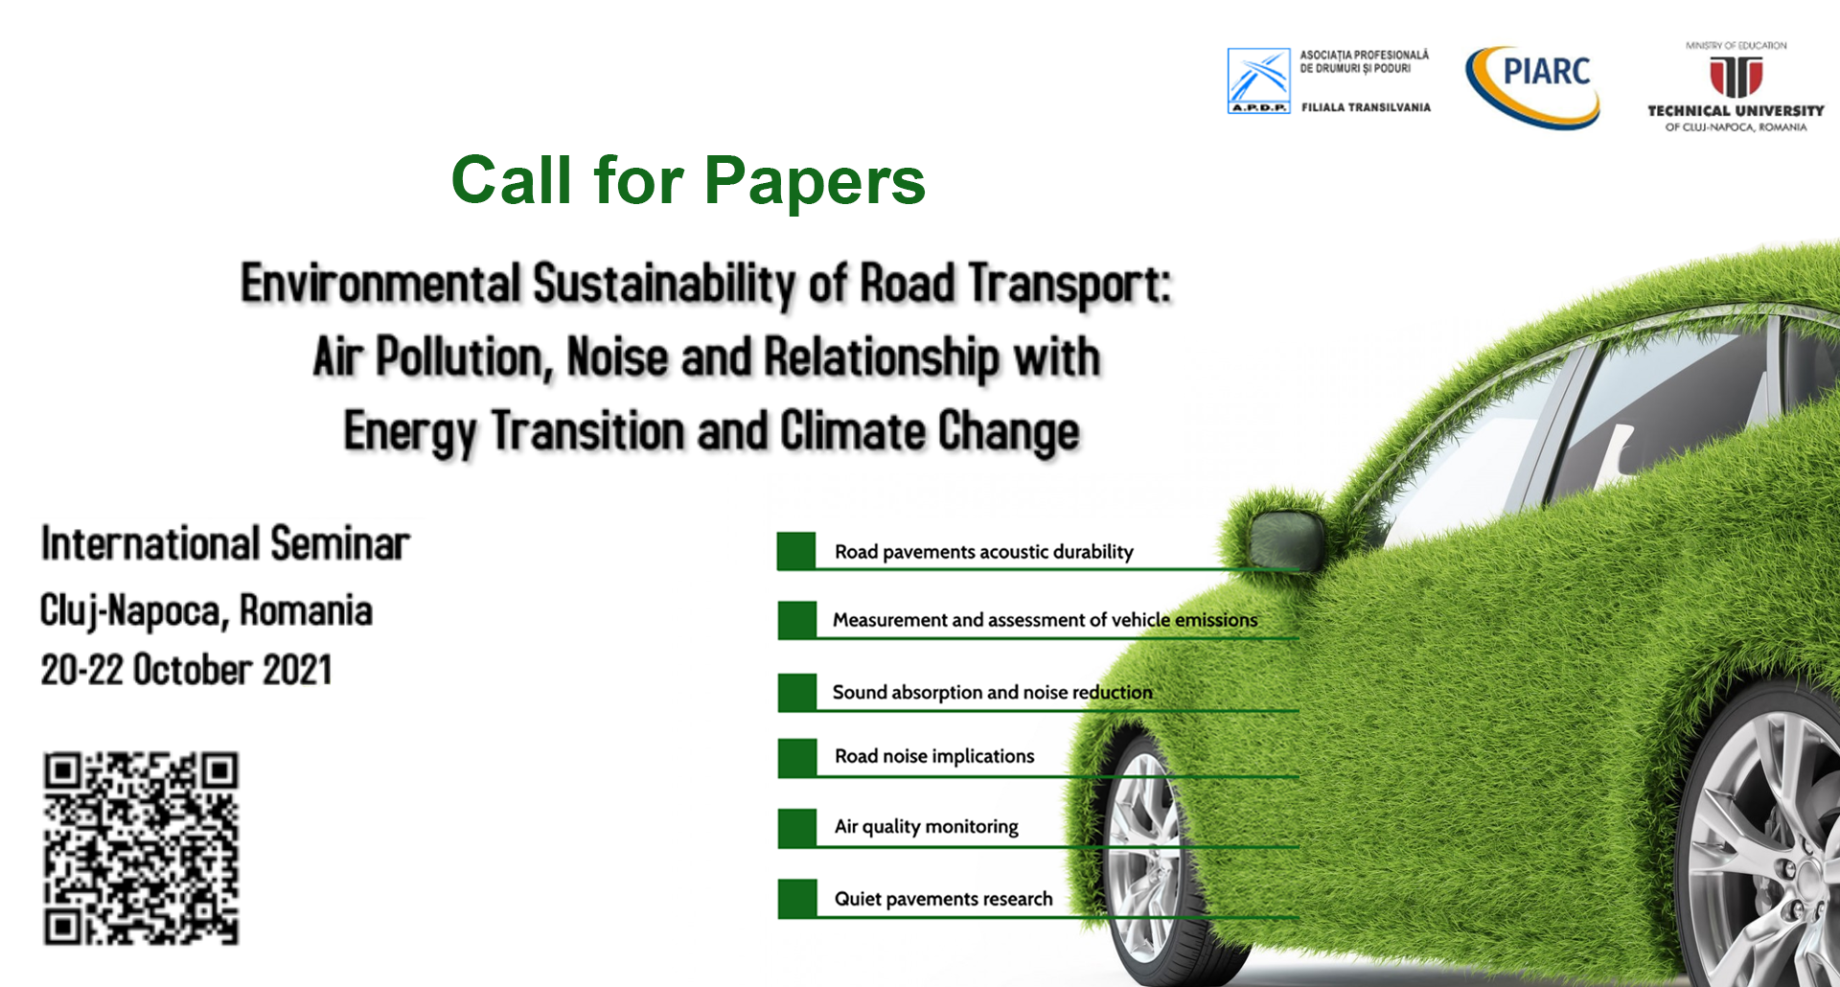 ¡Envíe un resumen y comparta sus conocimientos sobre la sostenibilidad medioambiental del transporte por carretera!